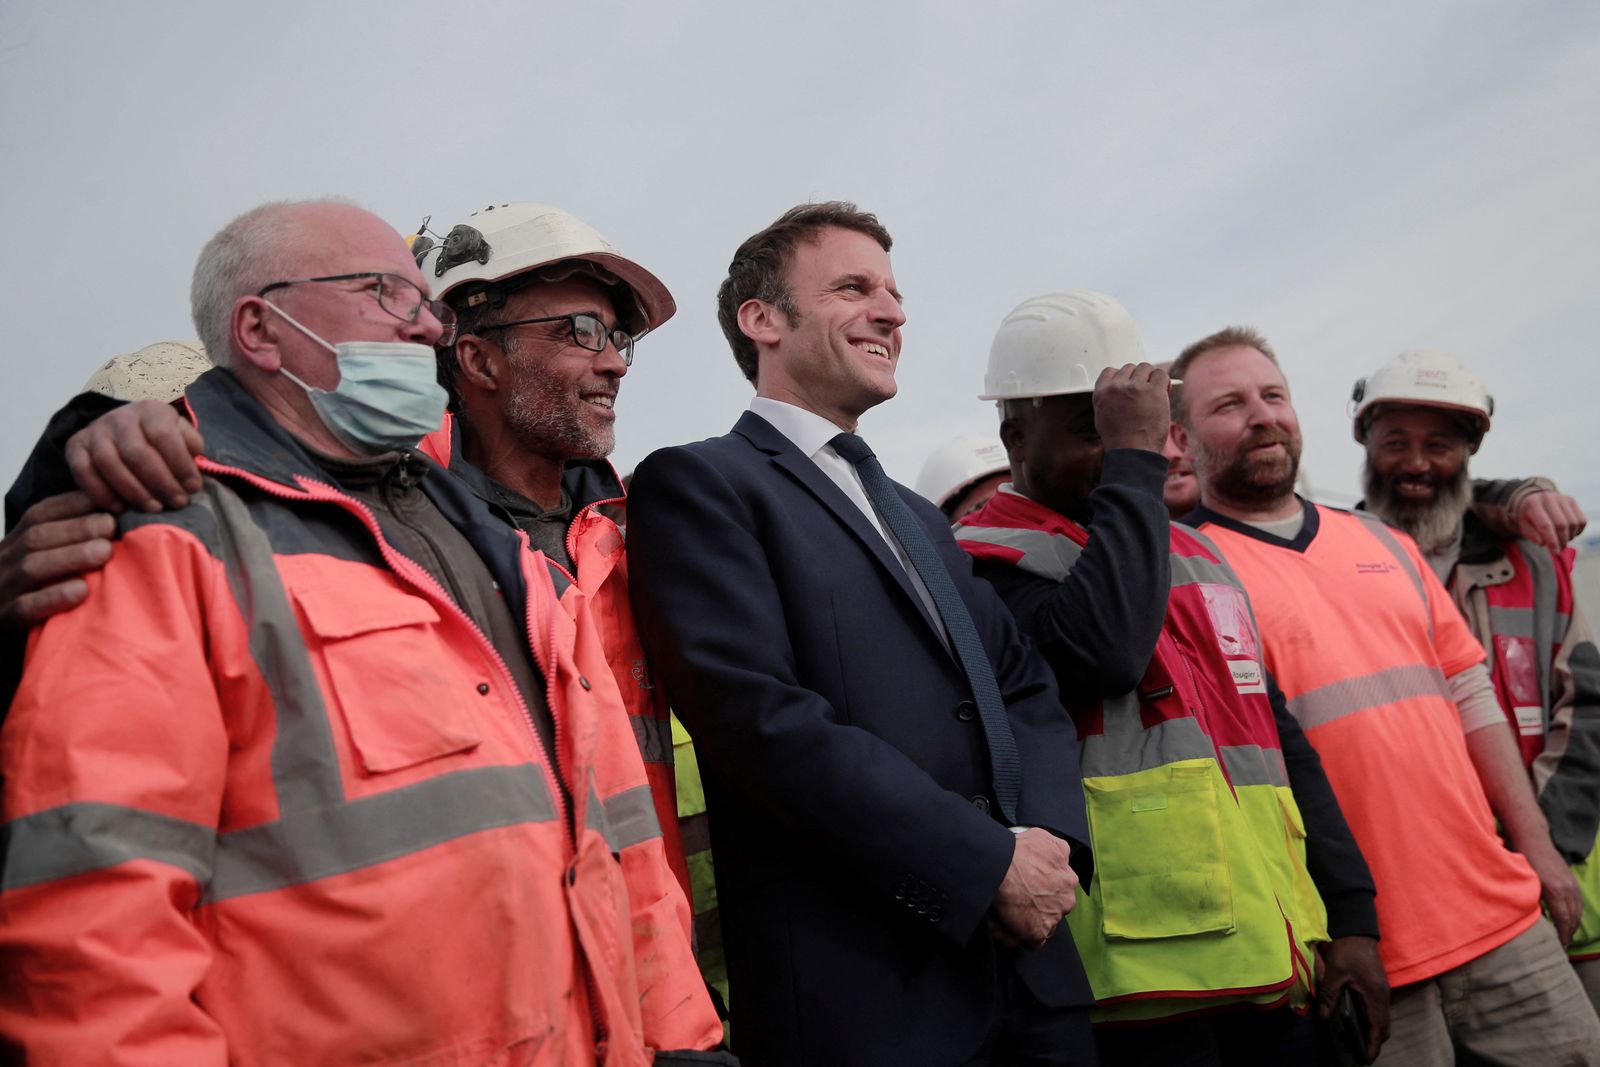 الرئيس الفرنسي إيمانويل ماكرون مع عمال أثناء زيارته موقع بناء في دونان شمال فرنسا - 11 أبريل 2022 - REUTERS